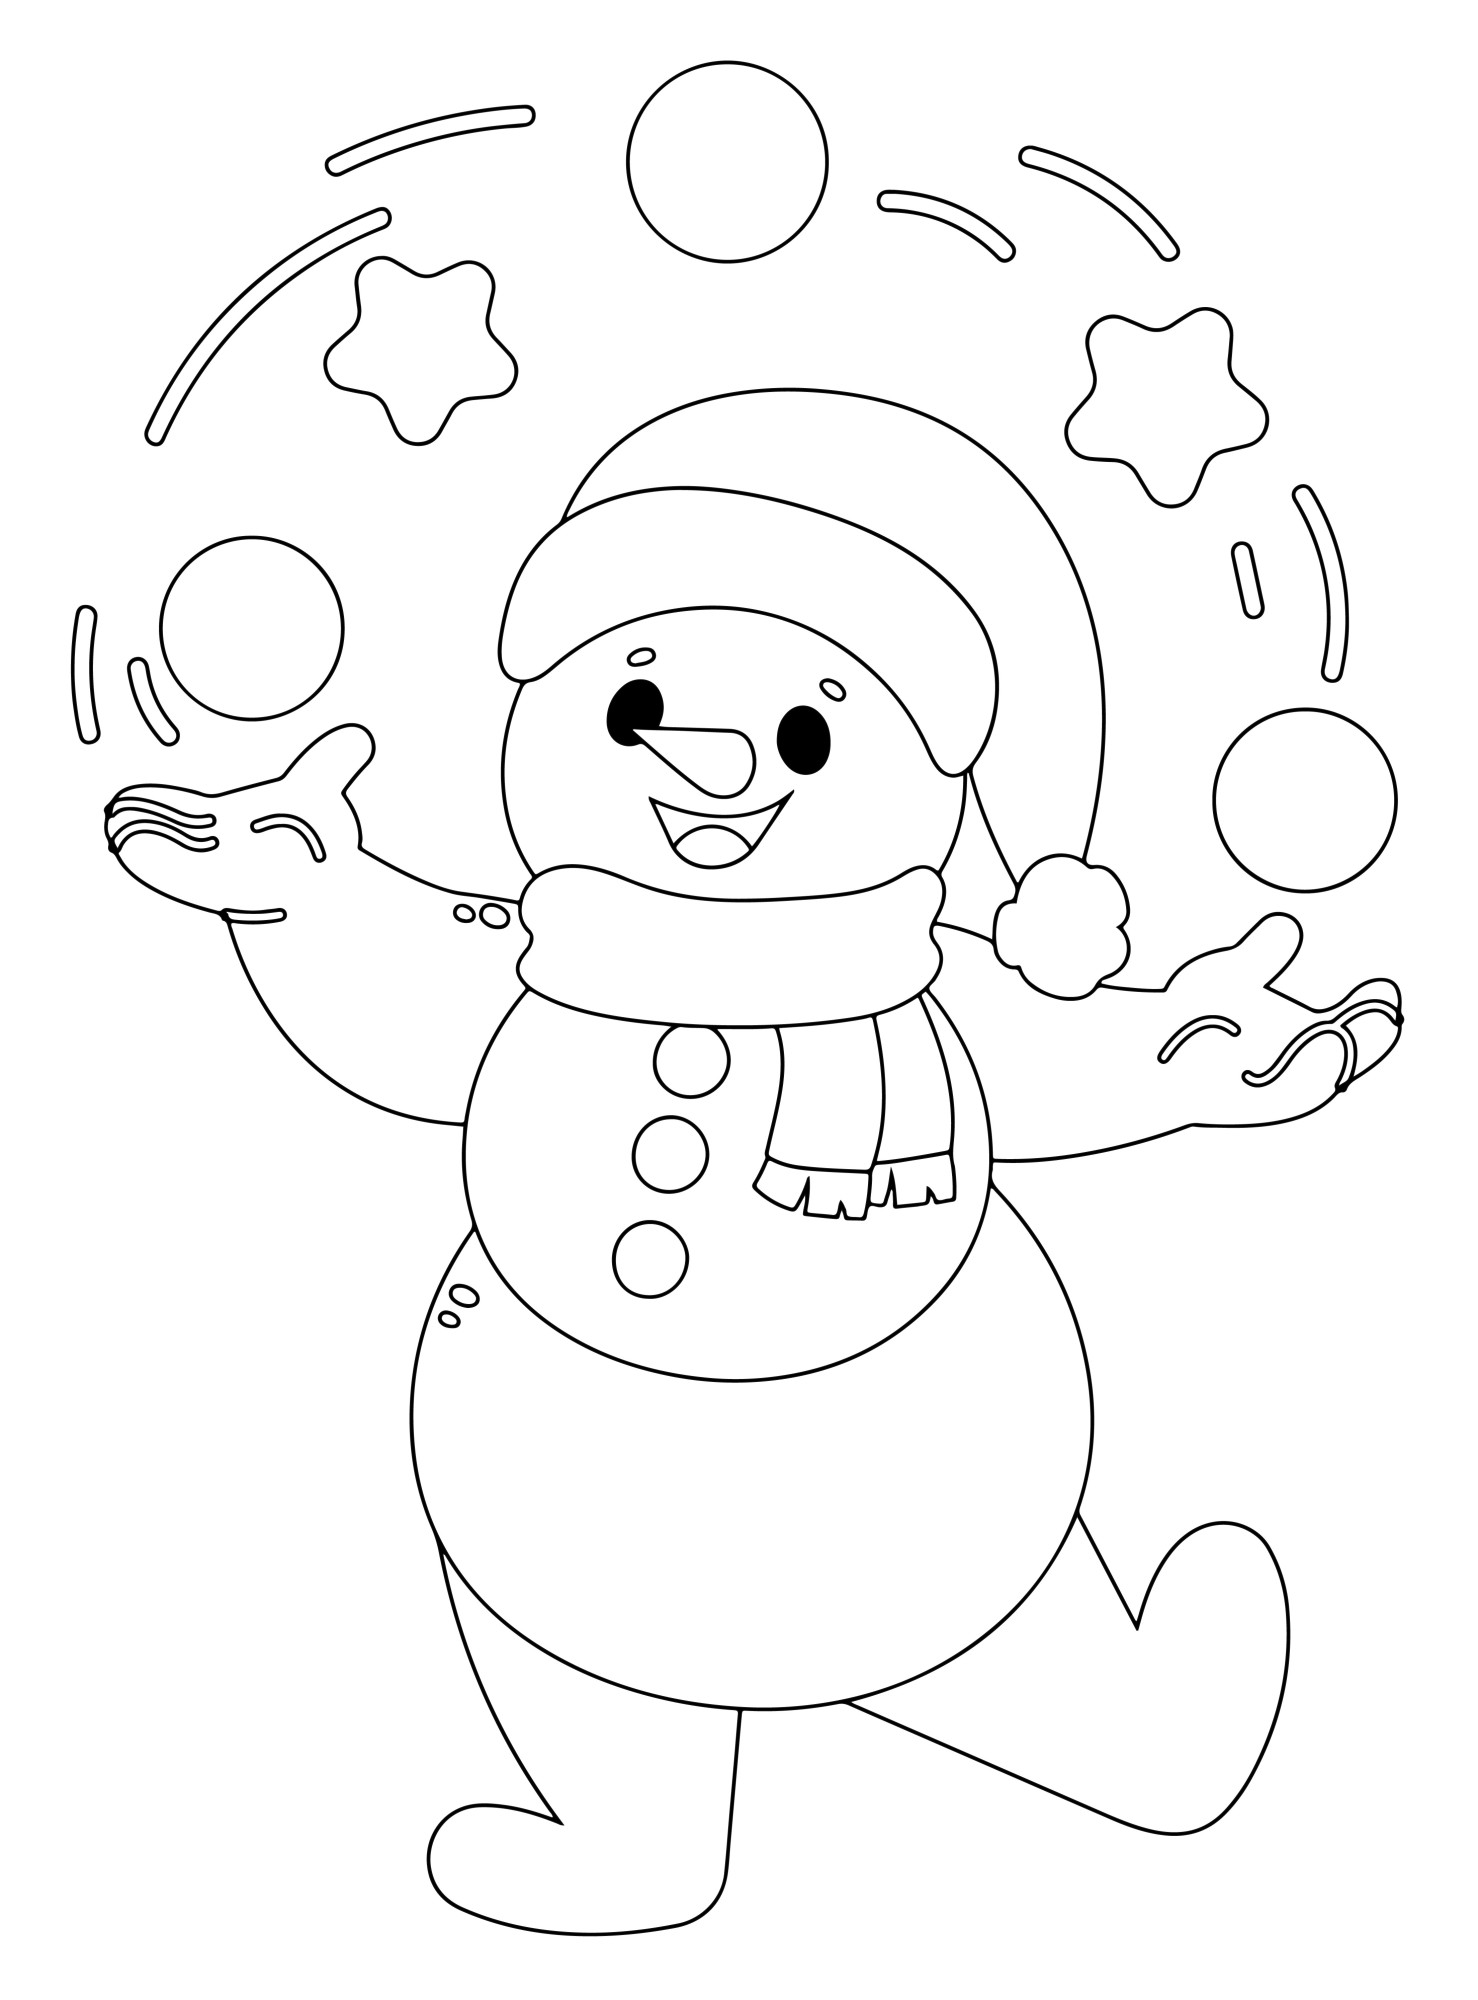 Раскраска для детей: снеговик играет в снежки